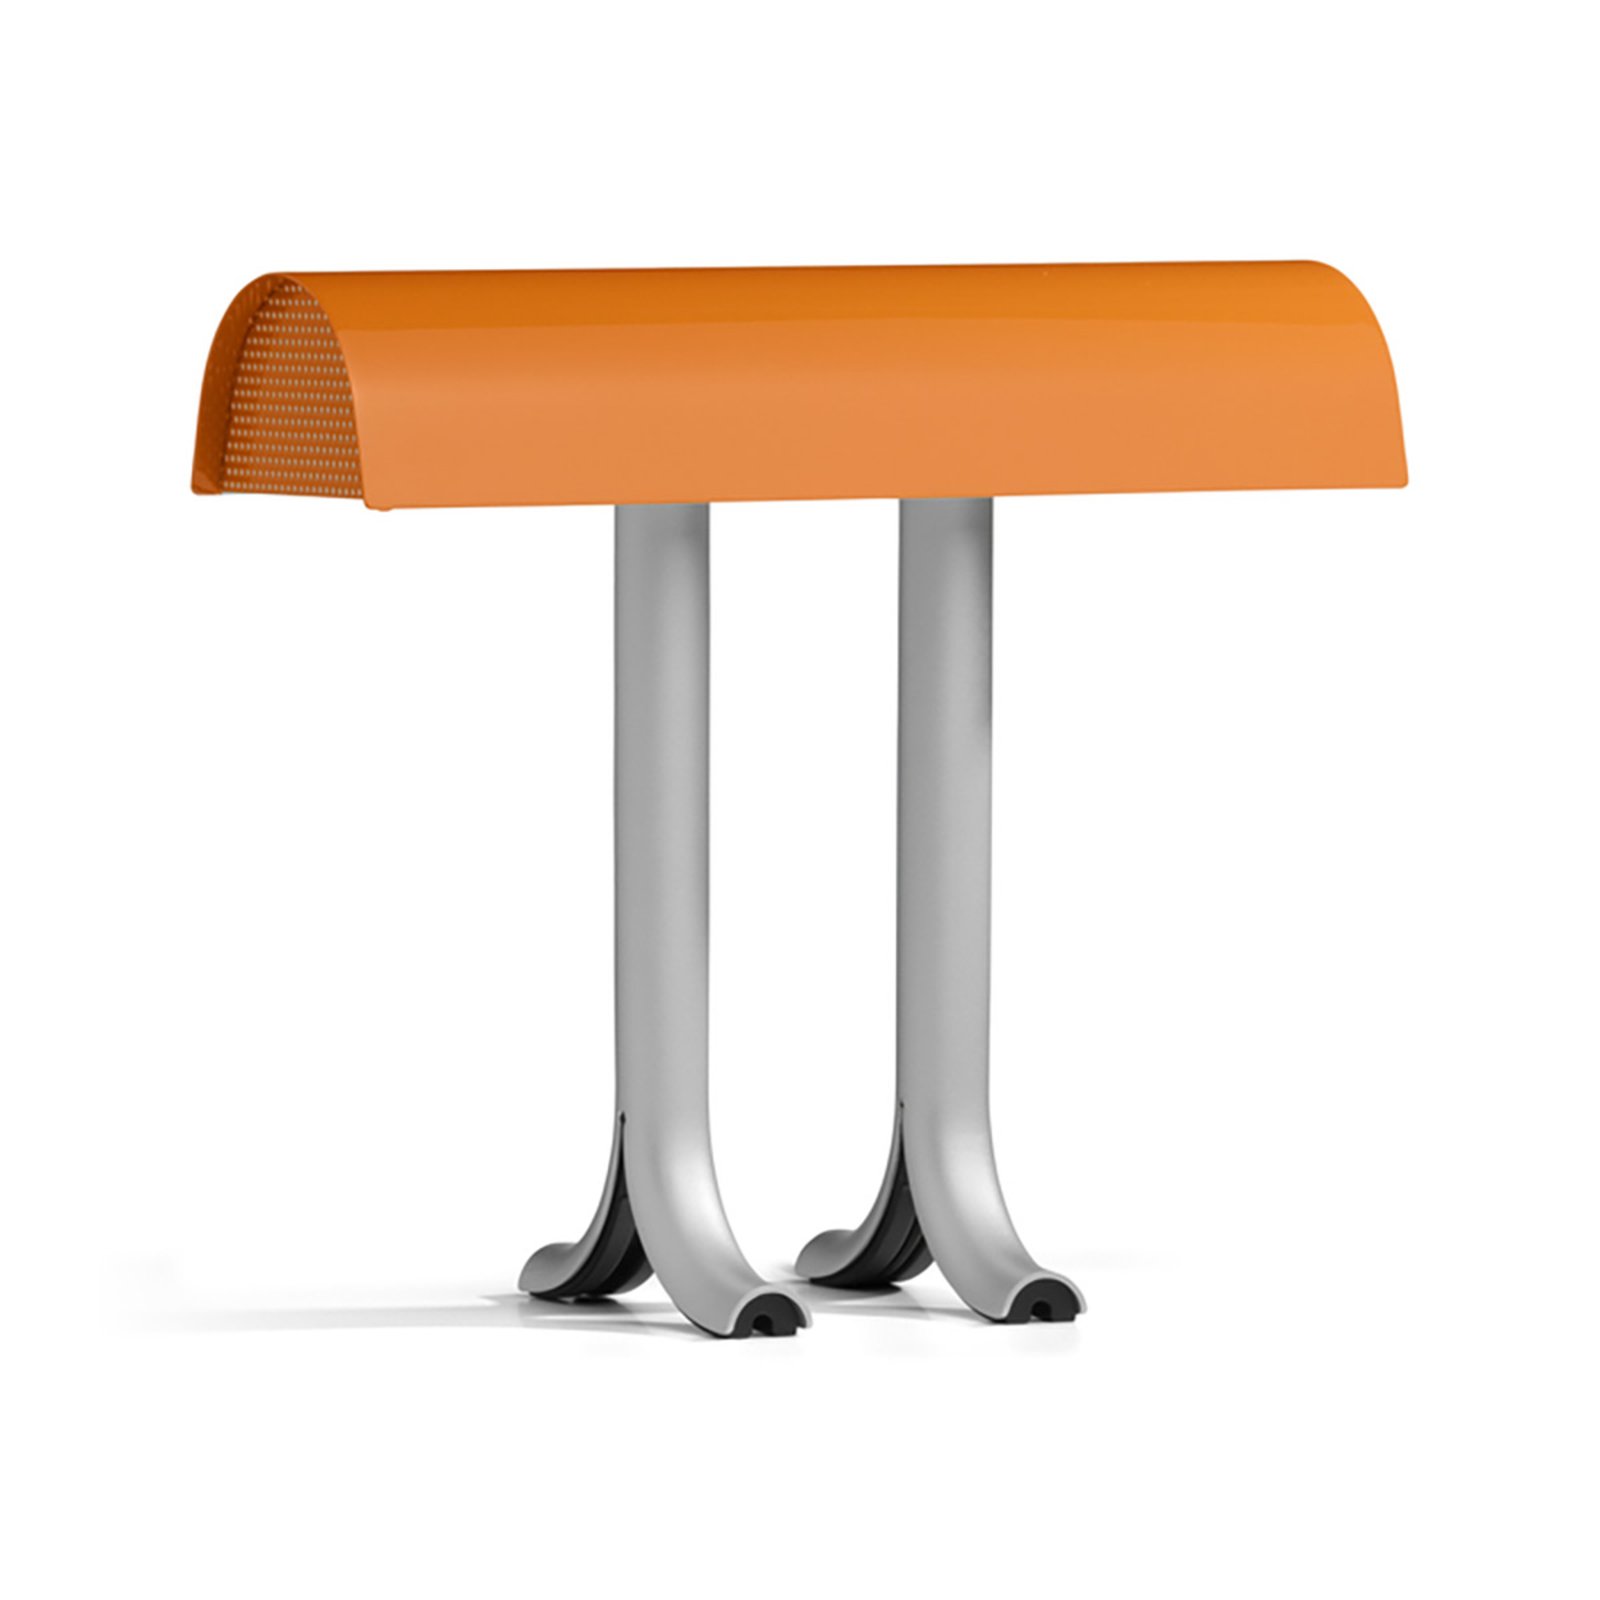 HAY Anagram asztali lámpa, fényezett narancs színben